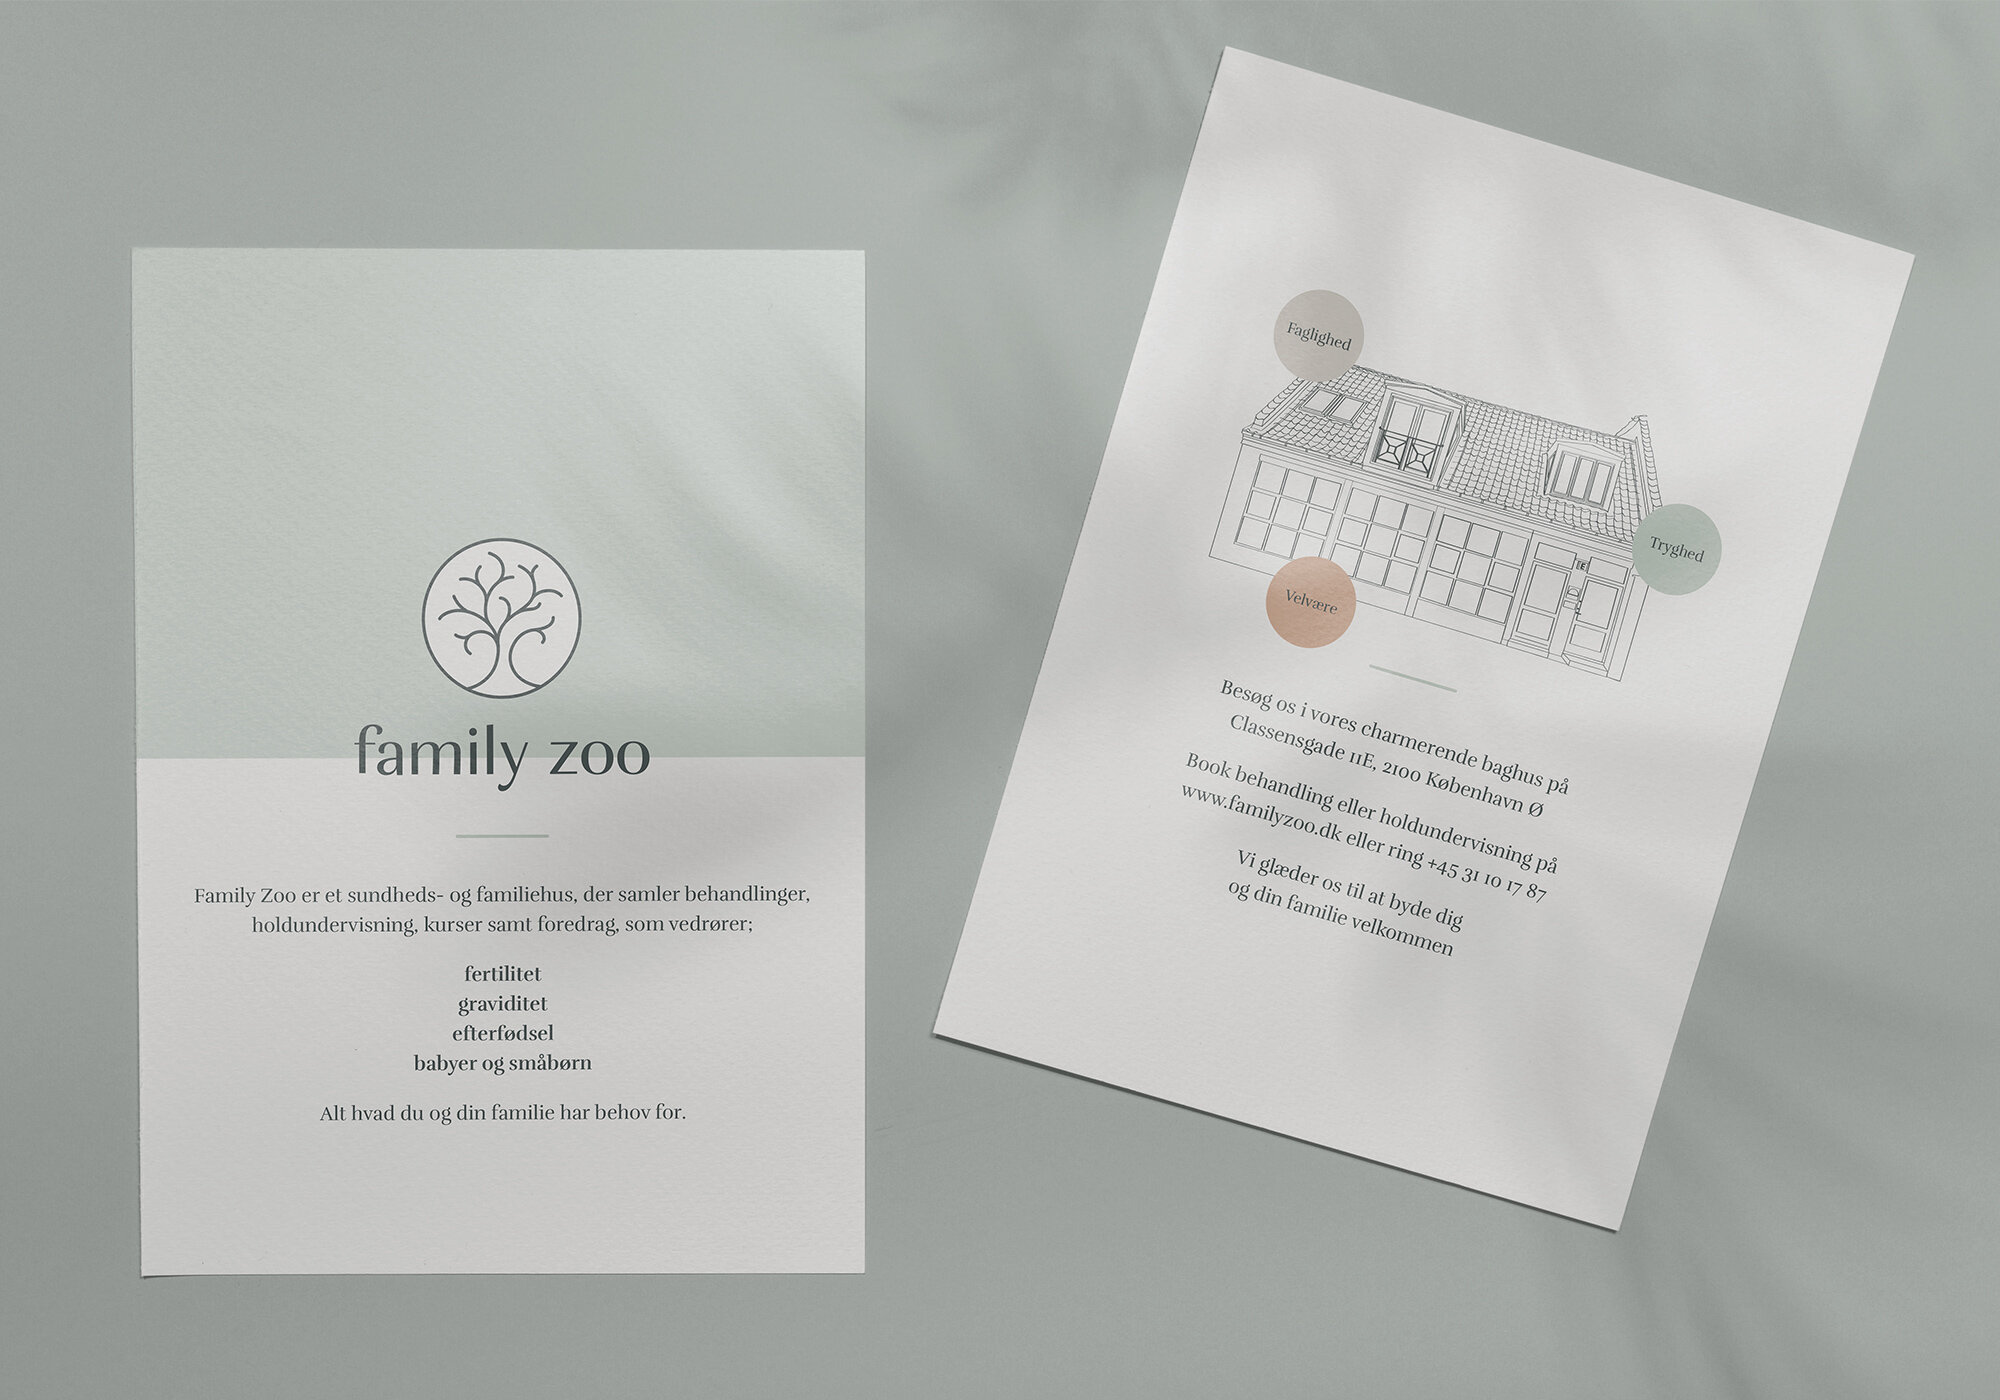 Family-zoo-flyer.jpg